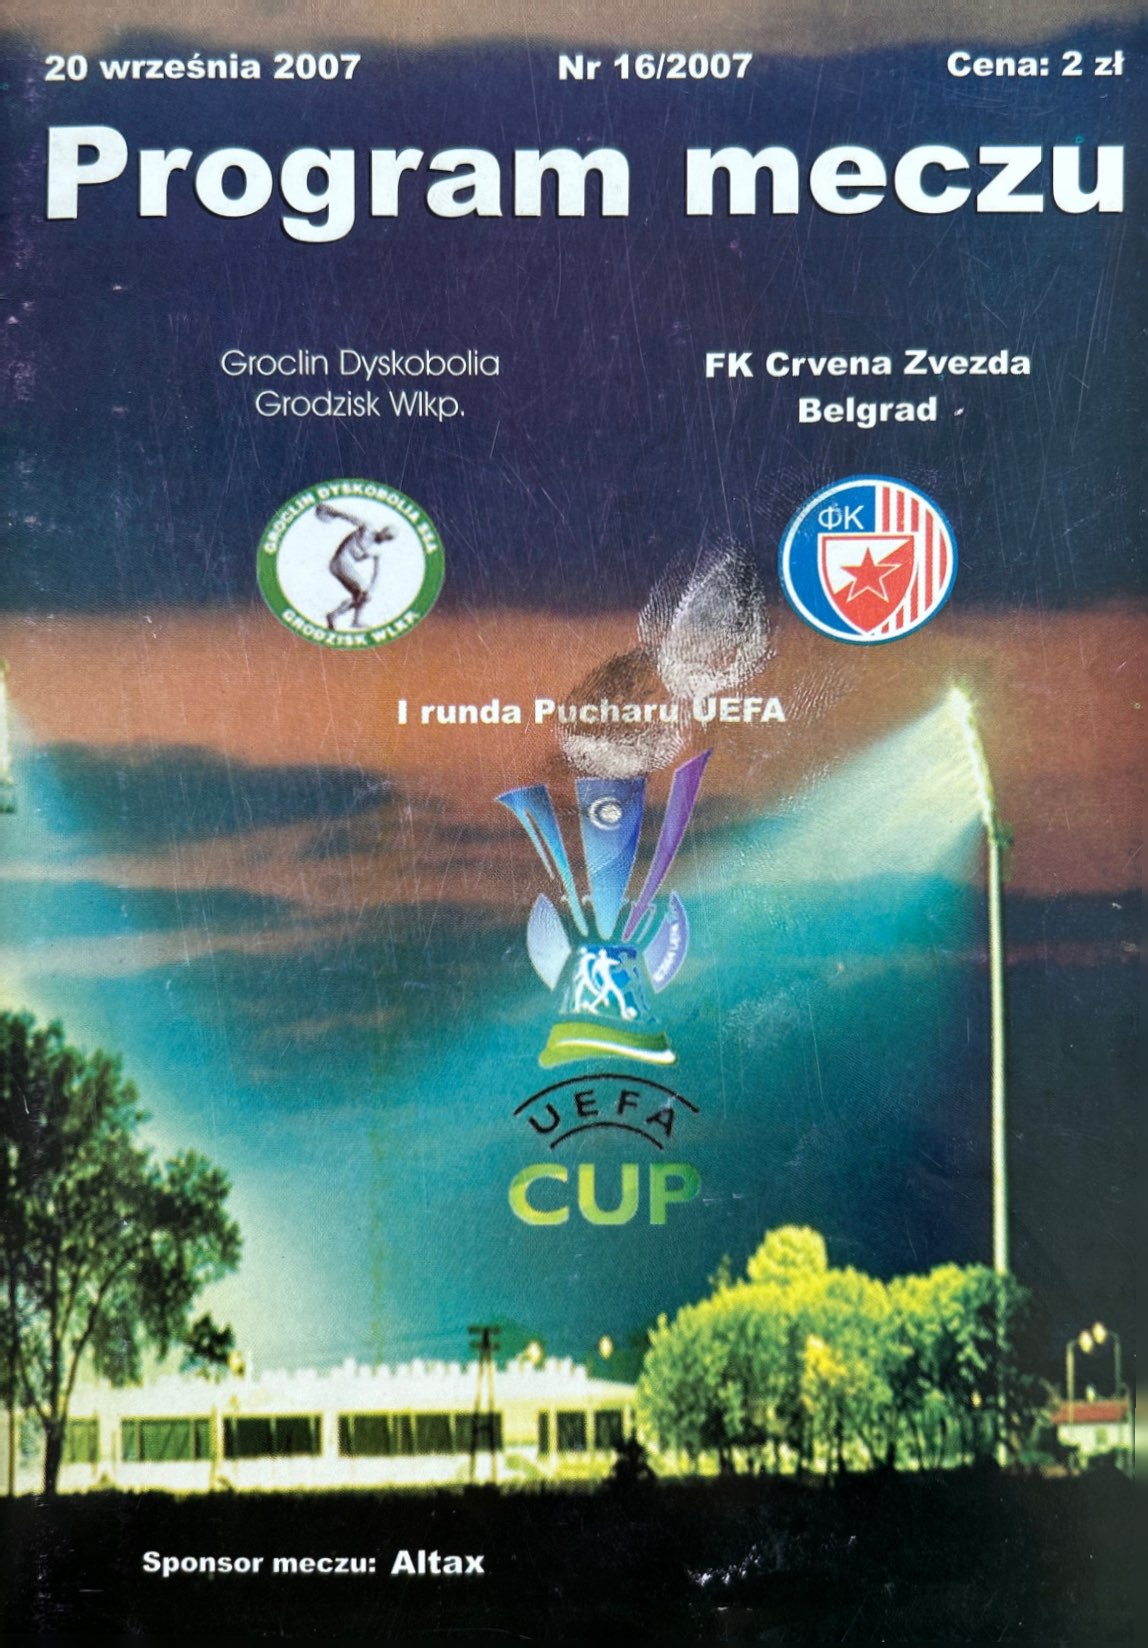 Program meczowy Groclin Dyskobolia Grodzisk Wlkp. - Crvena Zvezda Belgrad 0:1 (20.09.2007)